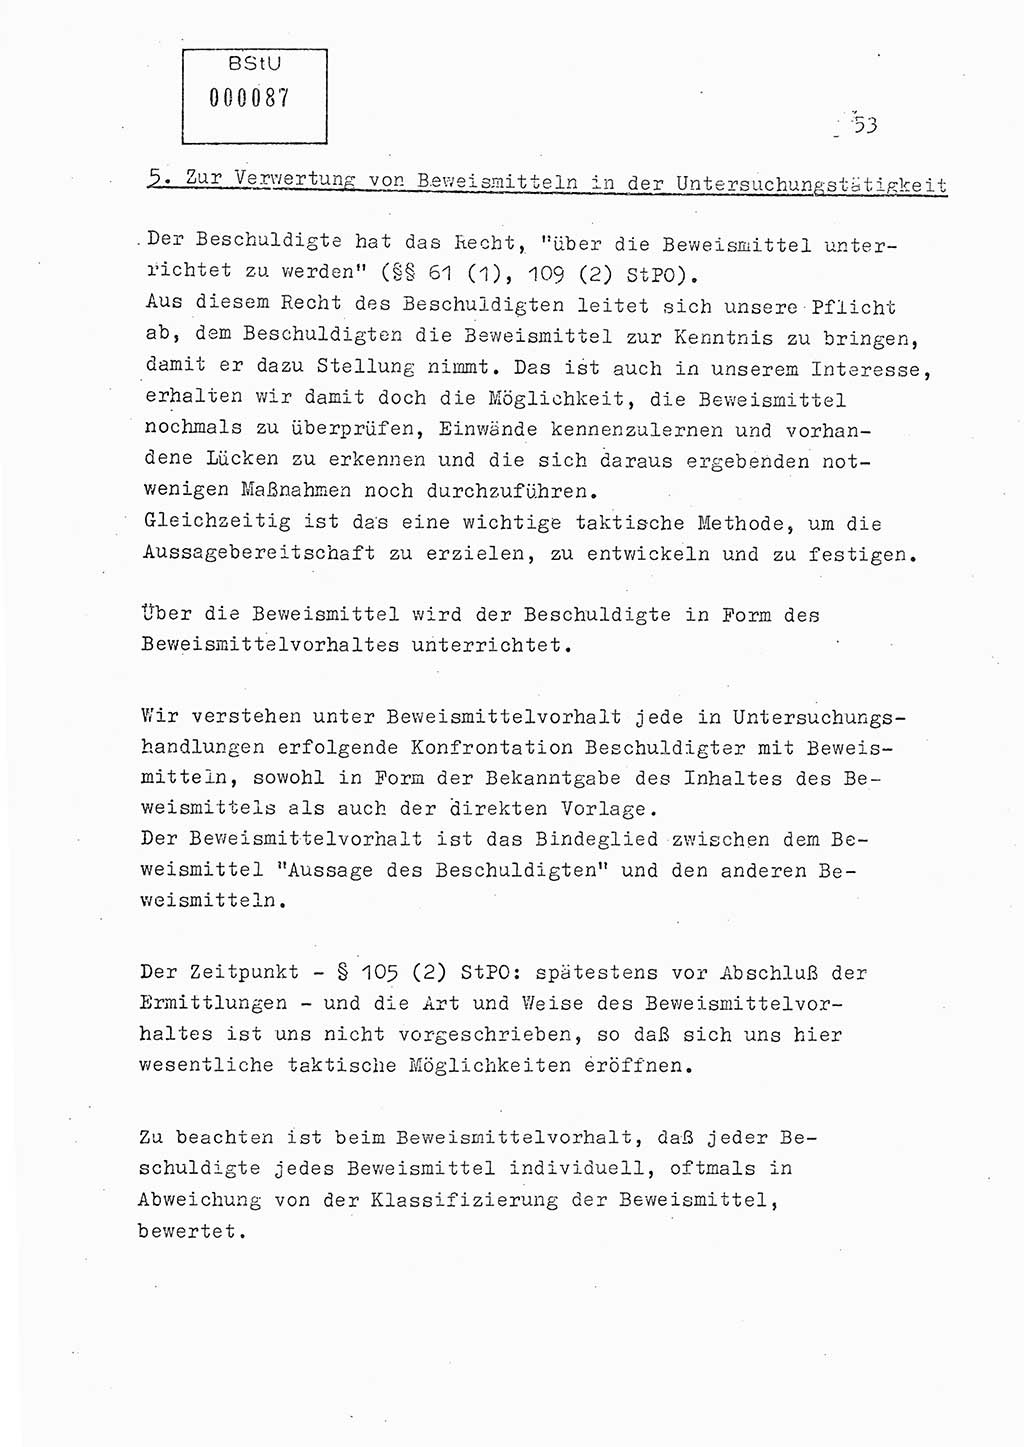 Lektion Ministerium für Staatssicherheit (MfS) [Deutsche Demokratische Republik (DDR)], Hauptabteilung (HA) Ⅸ, Berlin 1979, Seite 53 (Lekt. Bew.-Fü. EV MfS DDR HA Ⅸ 1979, S. 53)